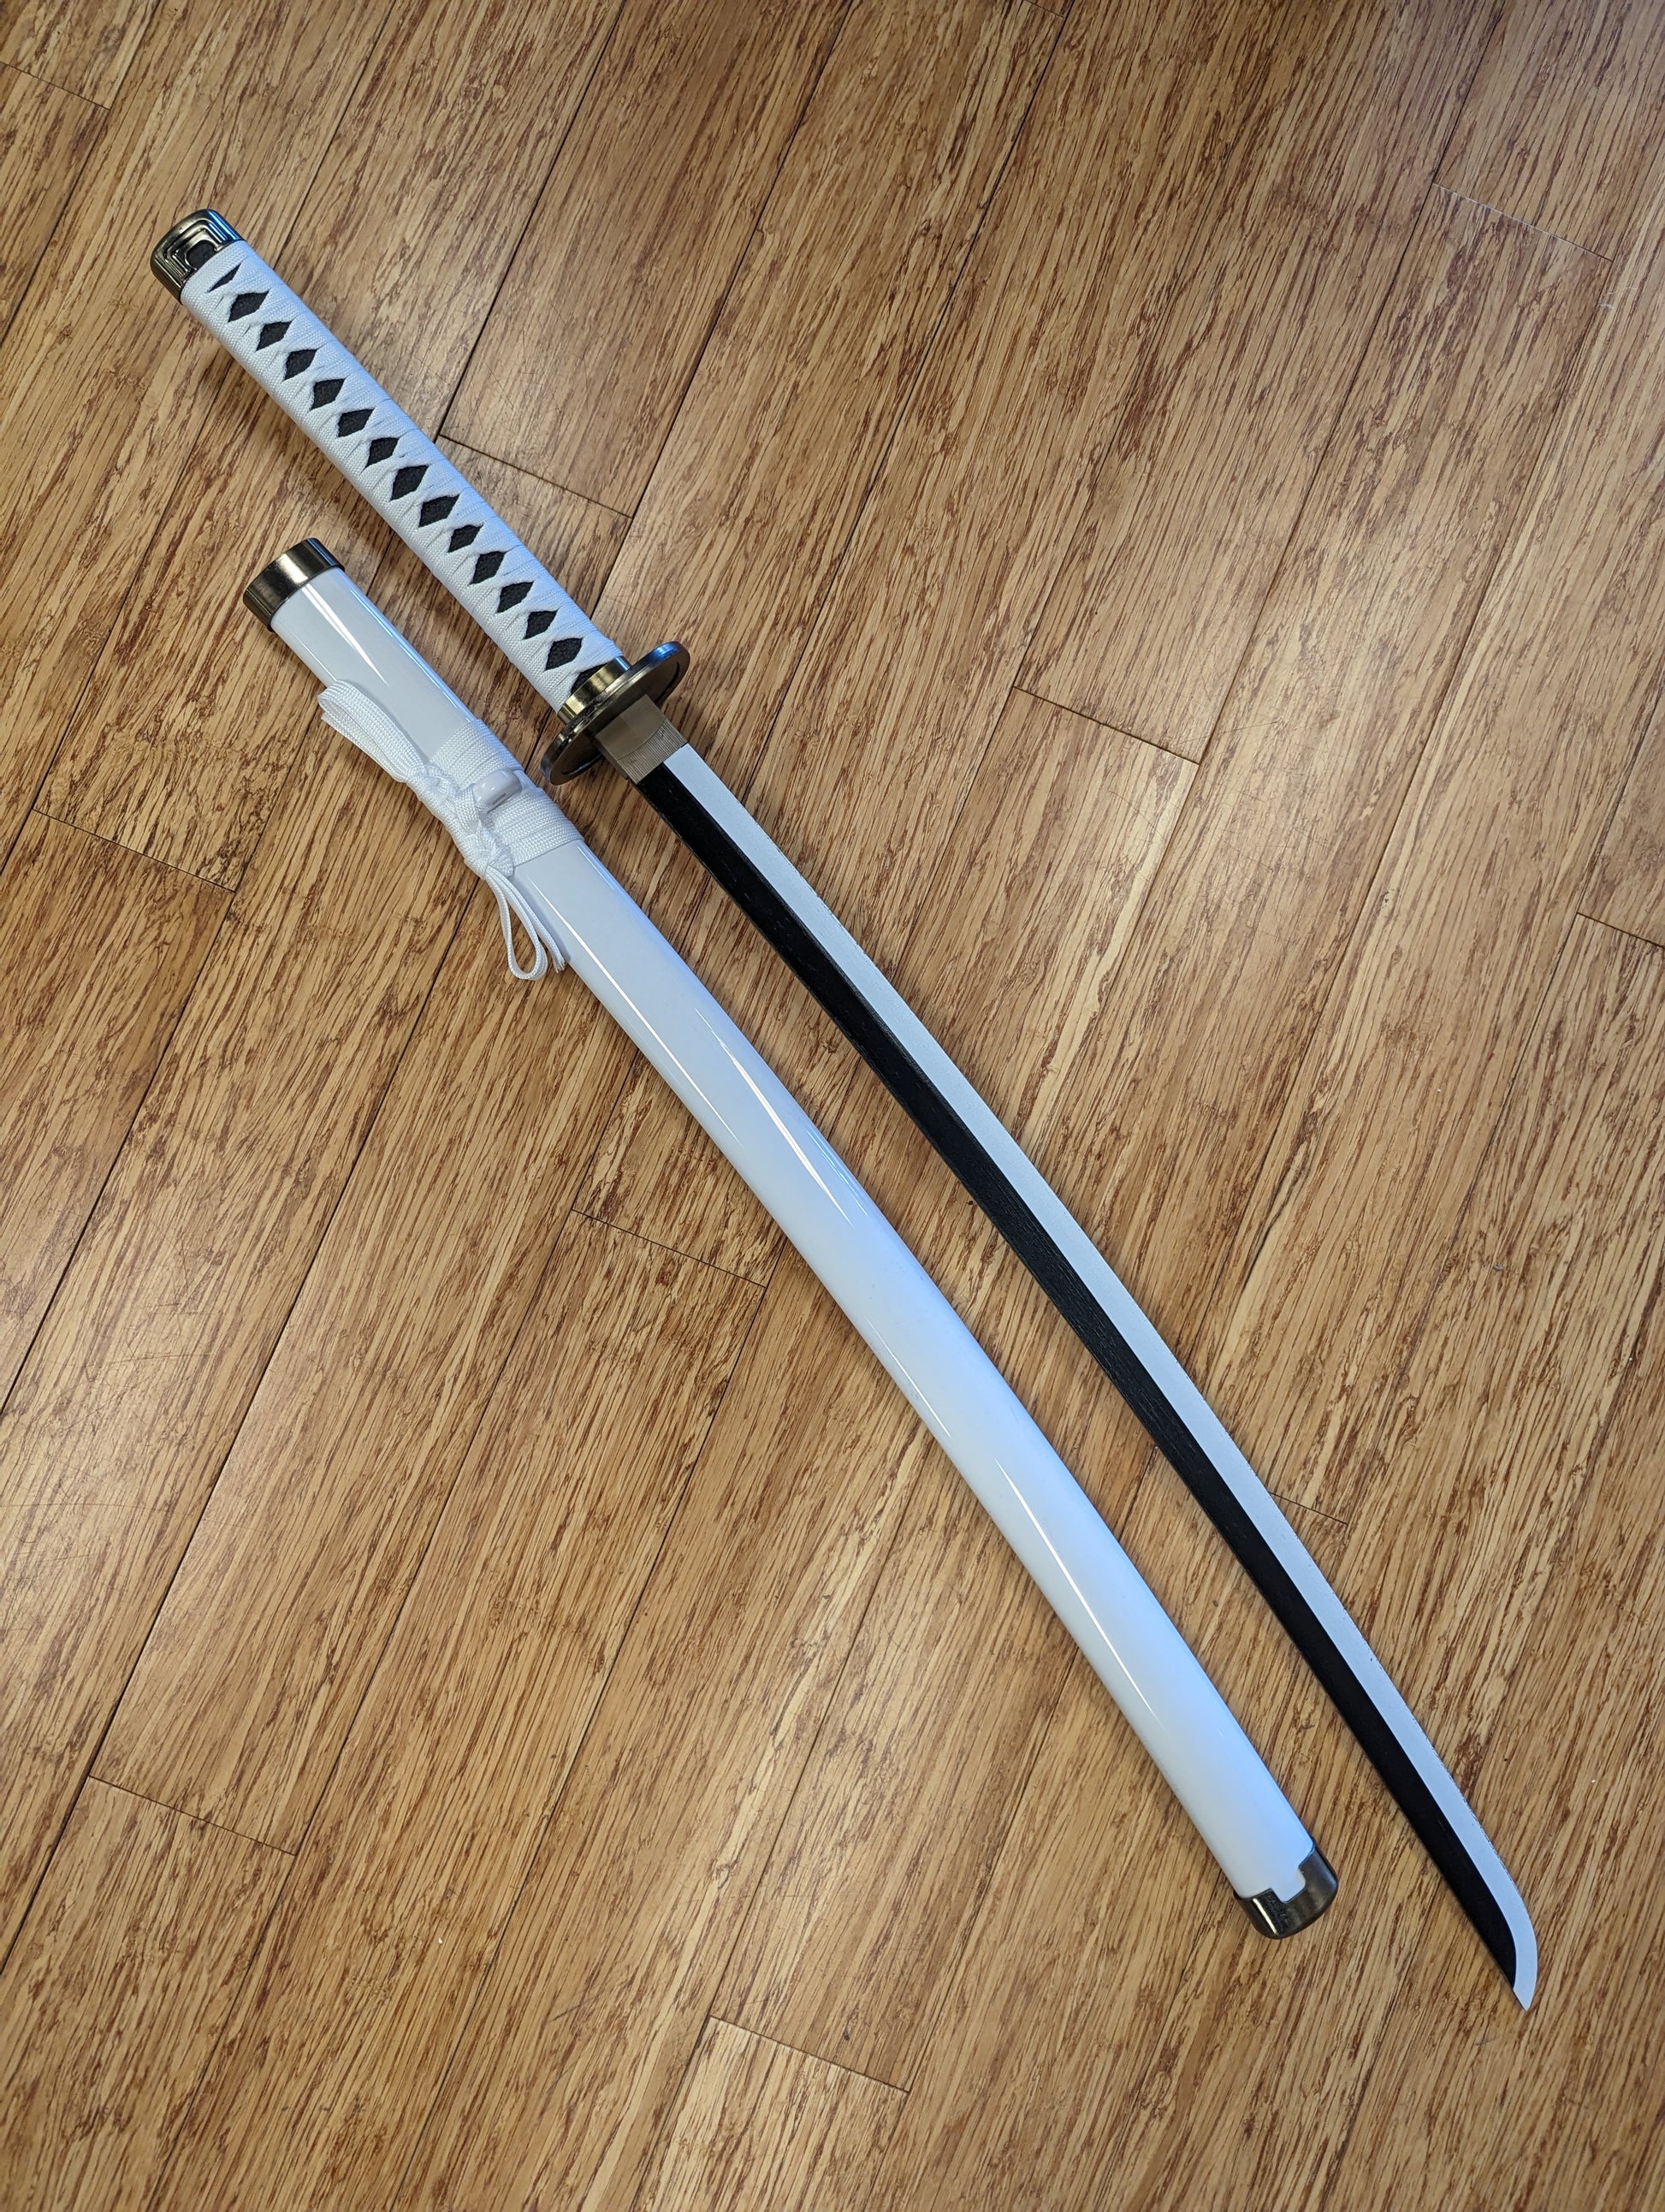 Wooden Cosplay Anime Swords Demon Slayer Rengoku Kyoujurou Samurai Sword  40 in  Walmartcom